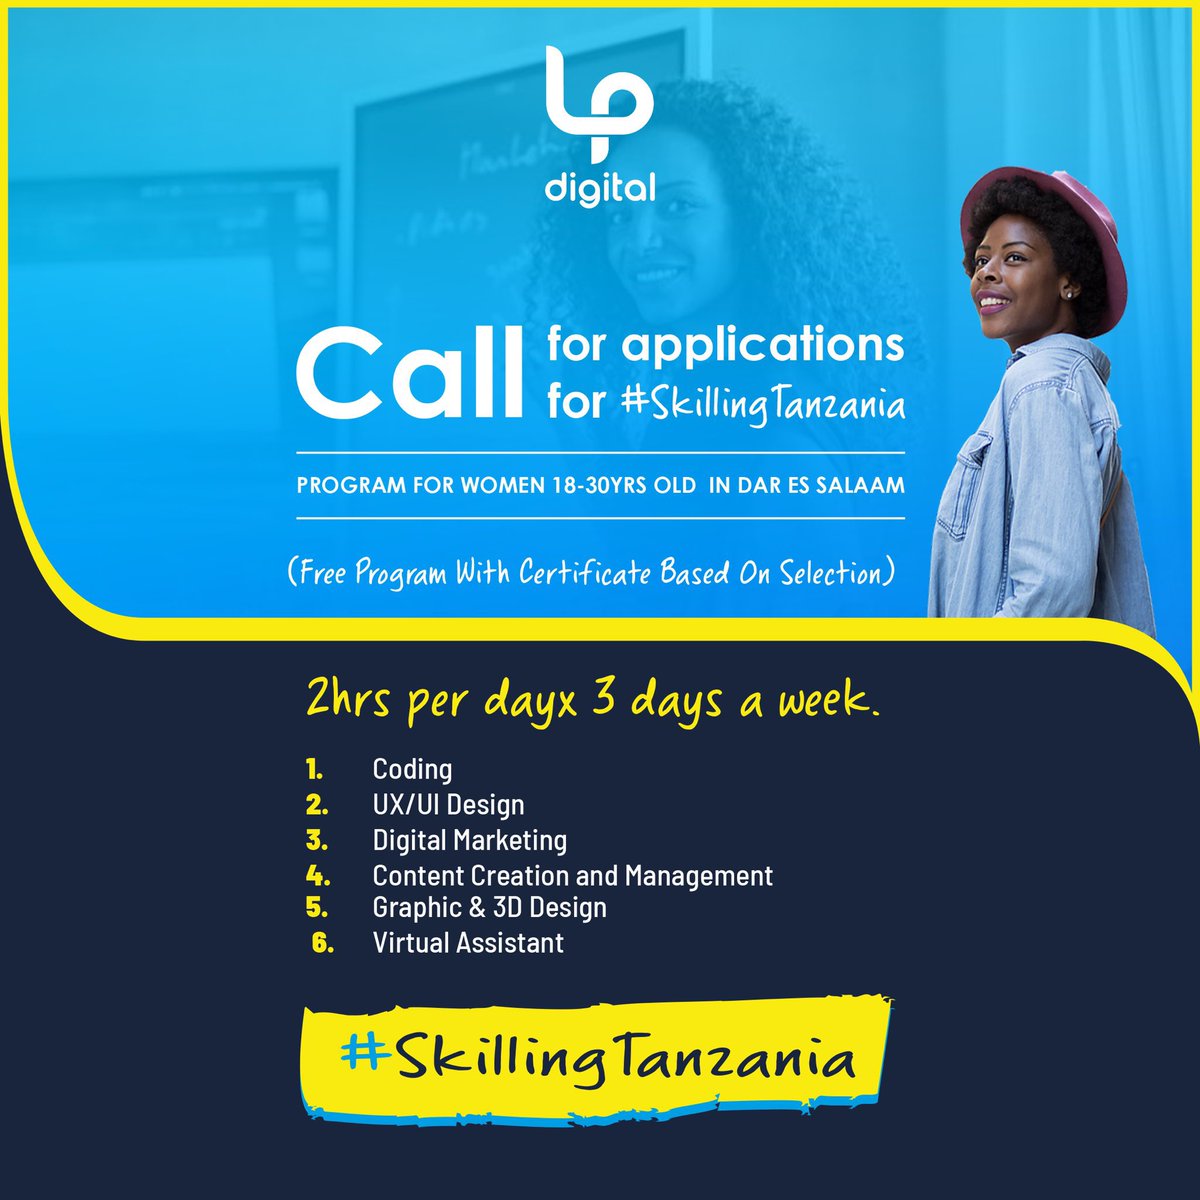 #DigitalTanzania Training Program for Women based in Dar es Salaam. 

Apply here docs.google.com/forms/d/e/1FAI…

#SkillingTanzania